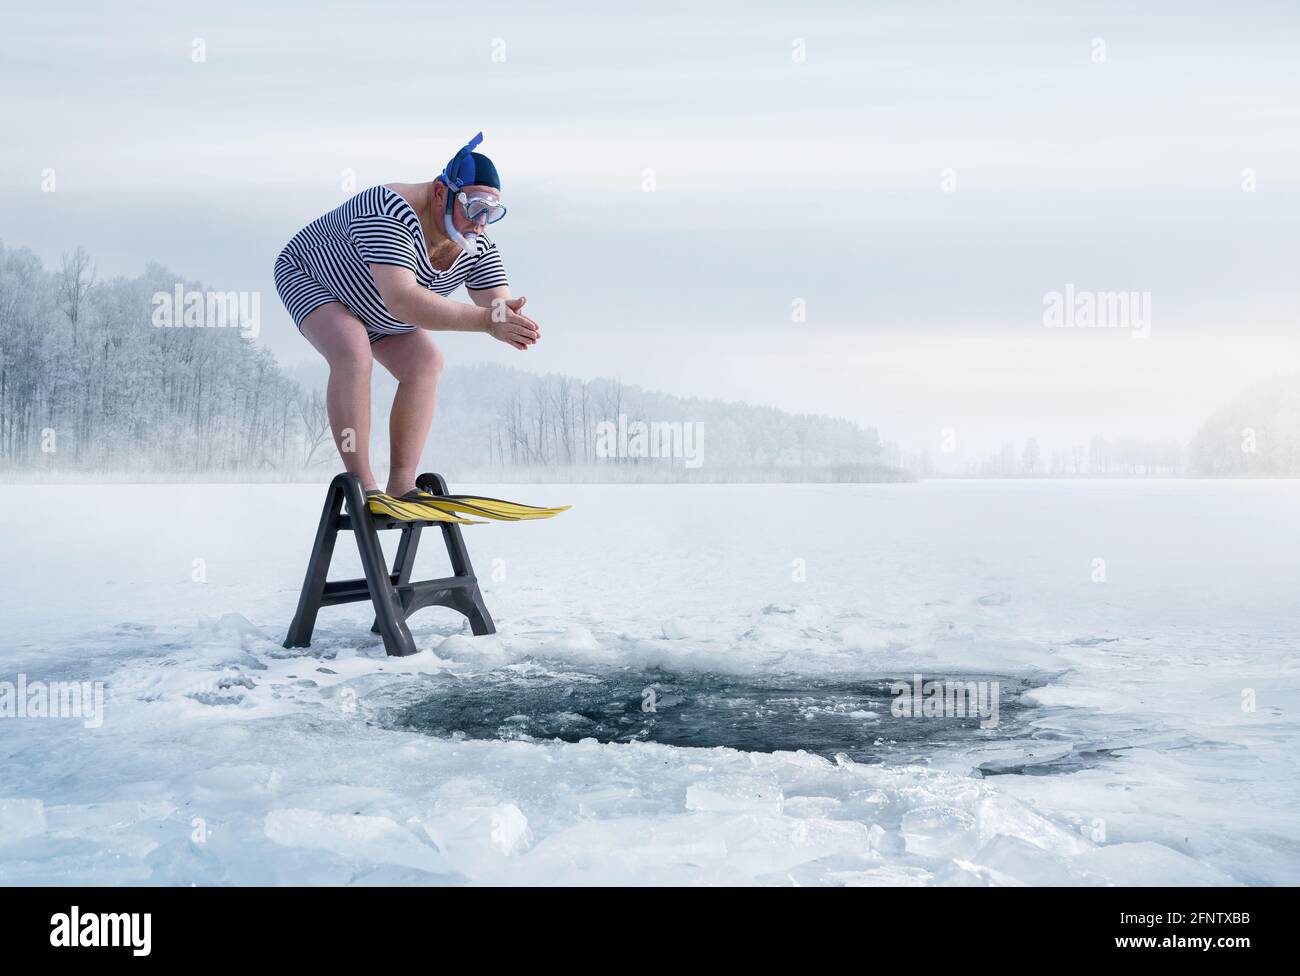 Fuunny sobrepeso, nadador retro a punto de saltar en el agujero de hielo en el lago, con espacio de copia Foto de stock